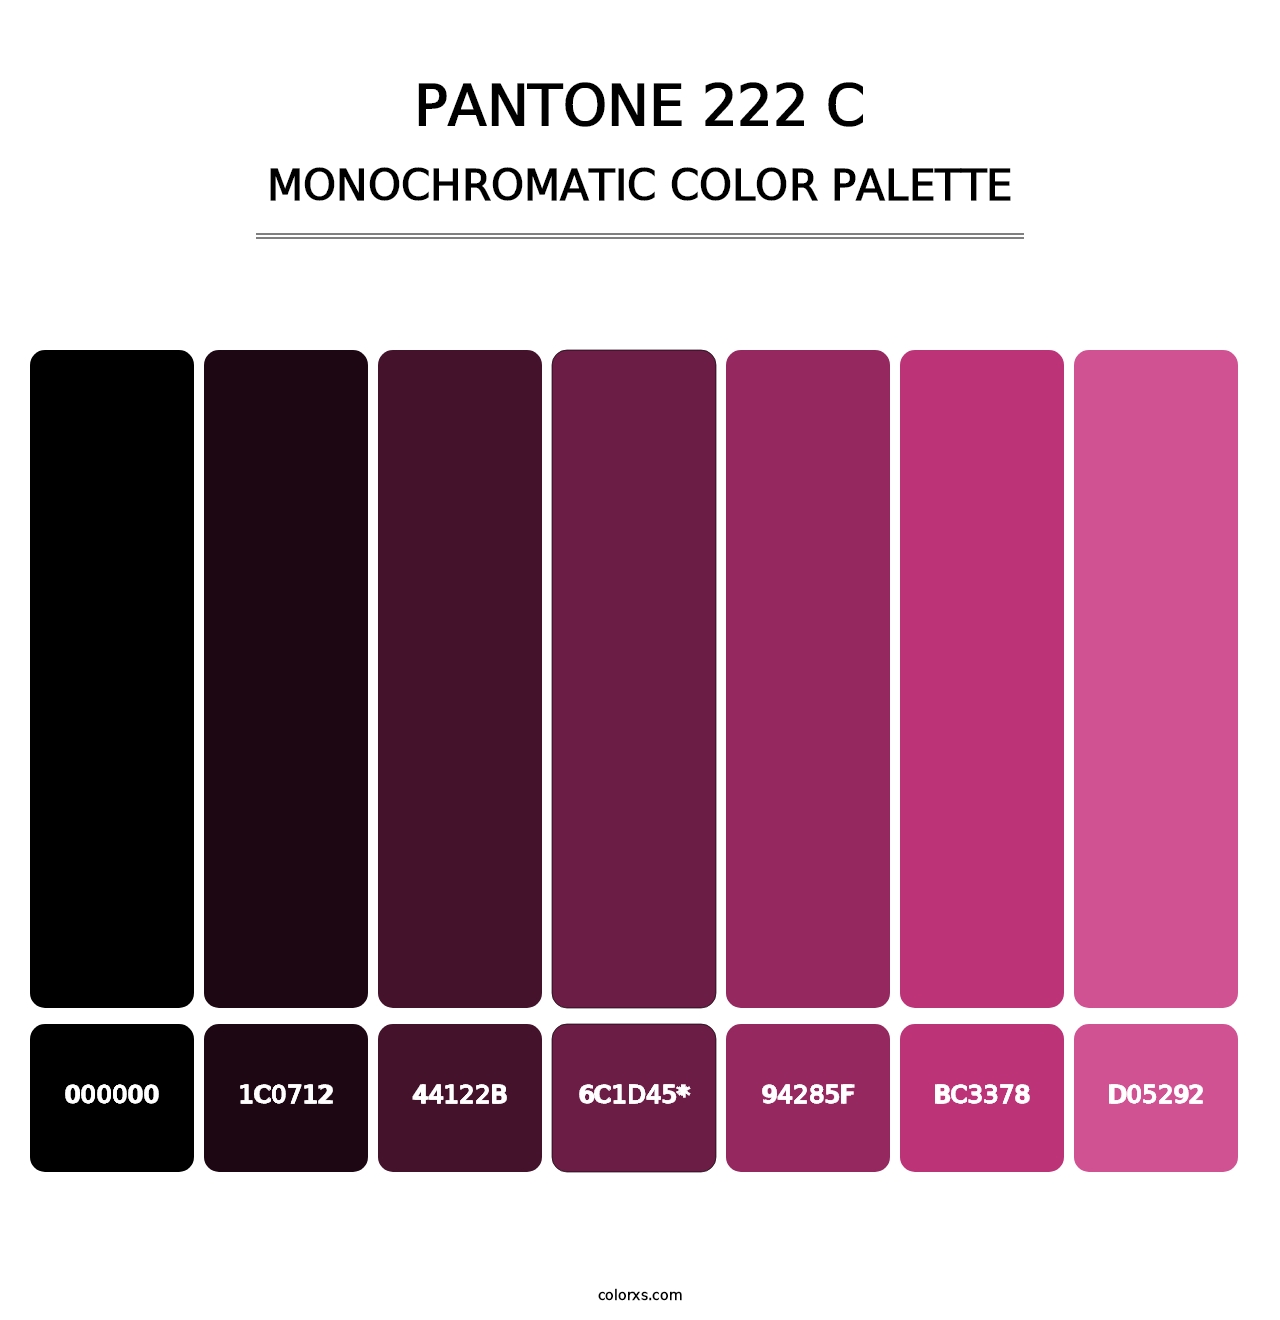 PANTONE 222 C - Monochromatic Color Palette